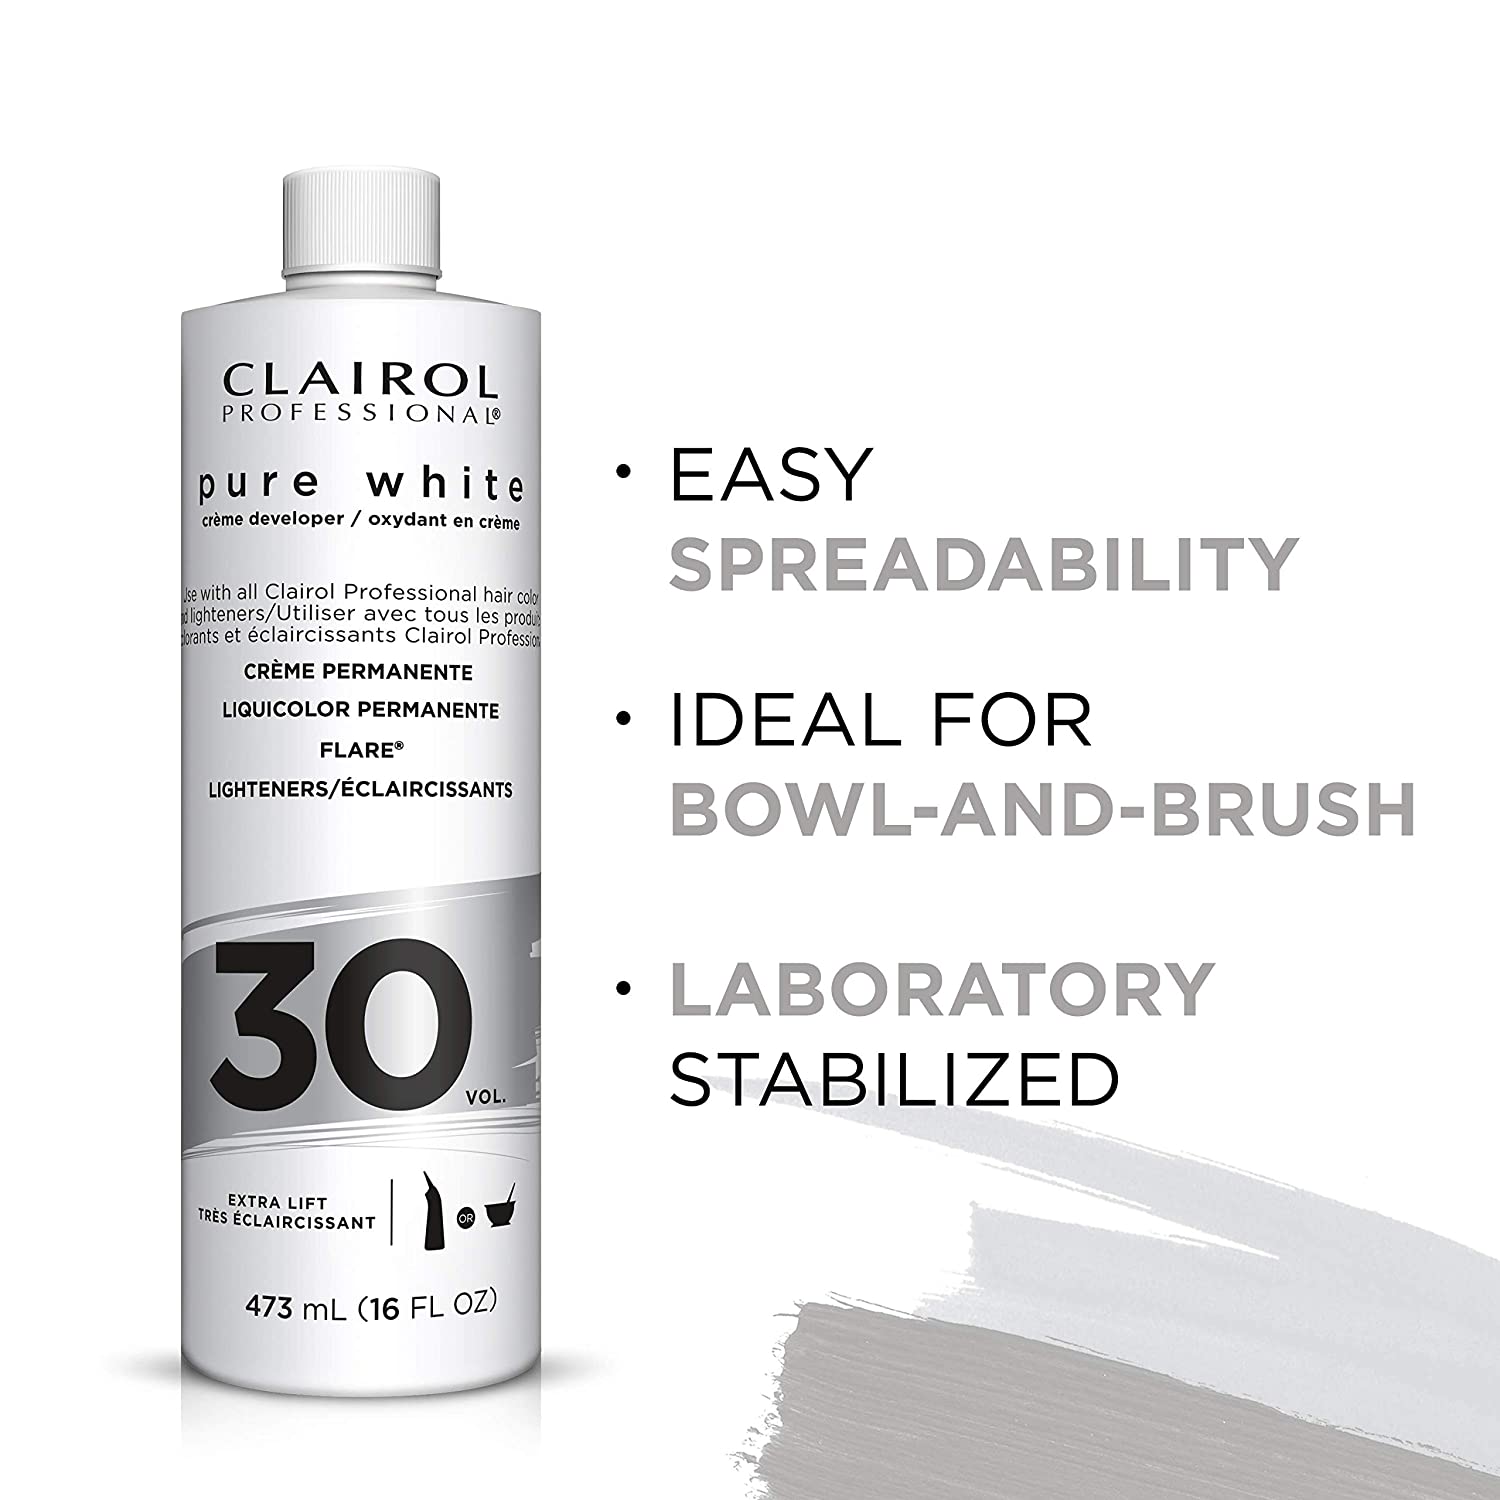 Clairol Professional Pure White 30 Volume Developer Extra Lift 16 oz